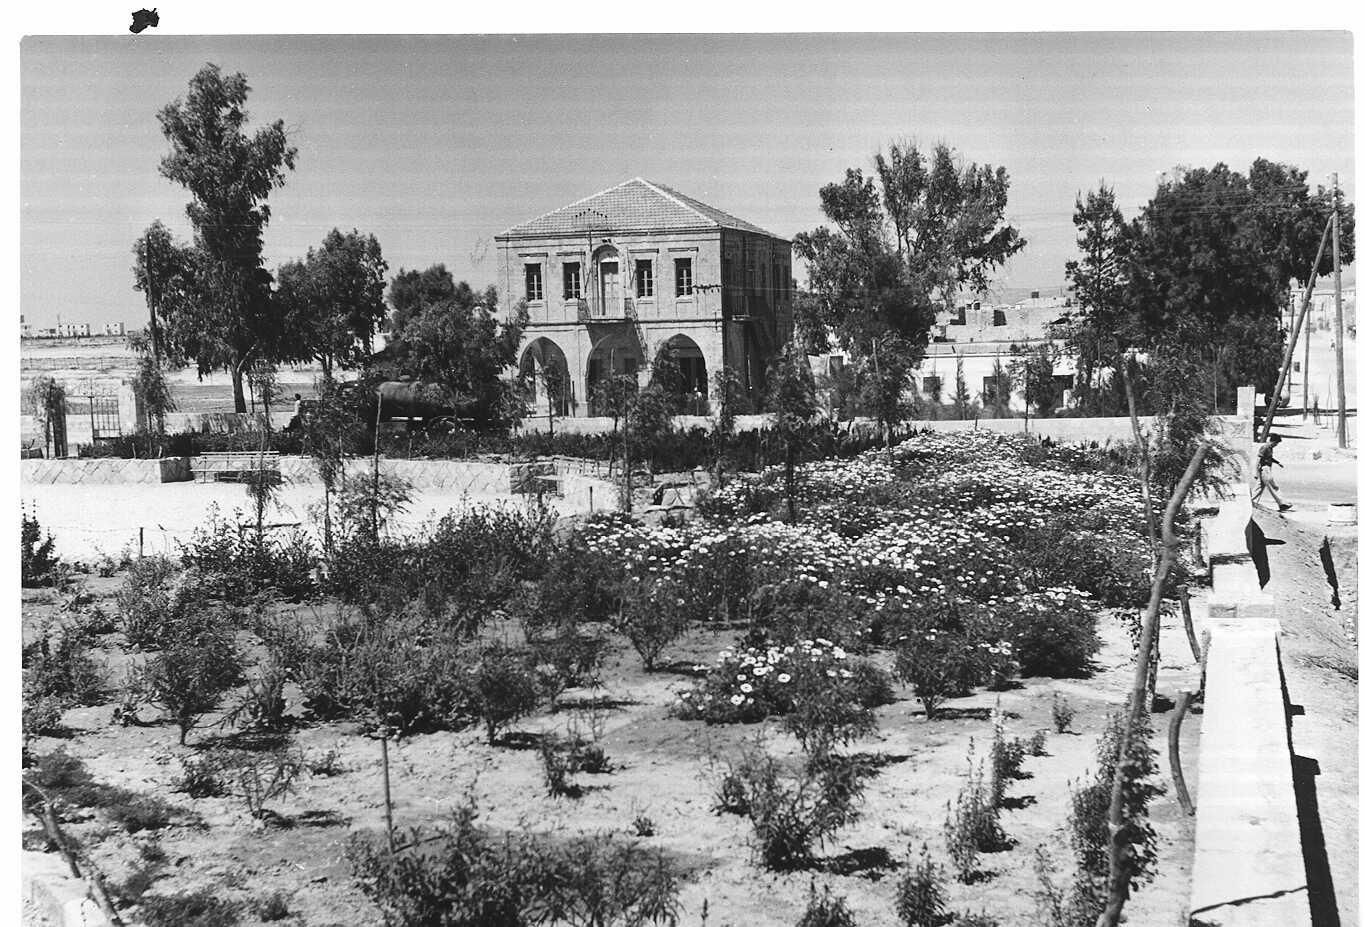 בית העירייה בבאר שבע לימים מוזאון הנגב, 1952, צלם פריץ שלזינגר, באדיבות הארכיון הציוני המרכזי